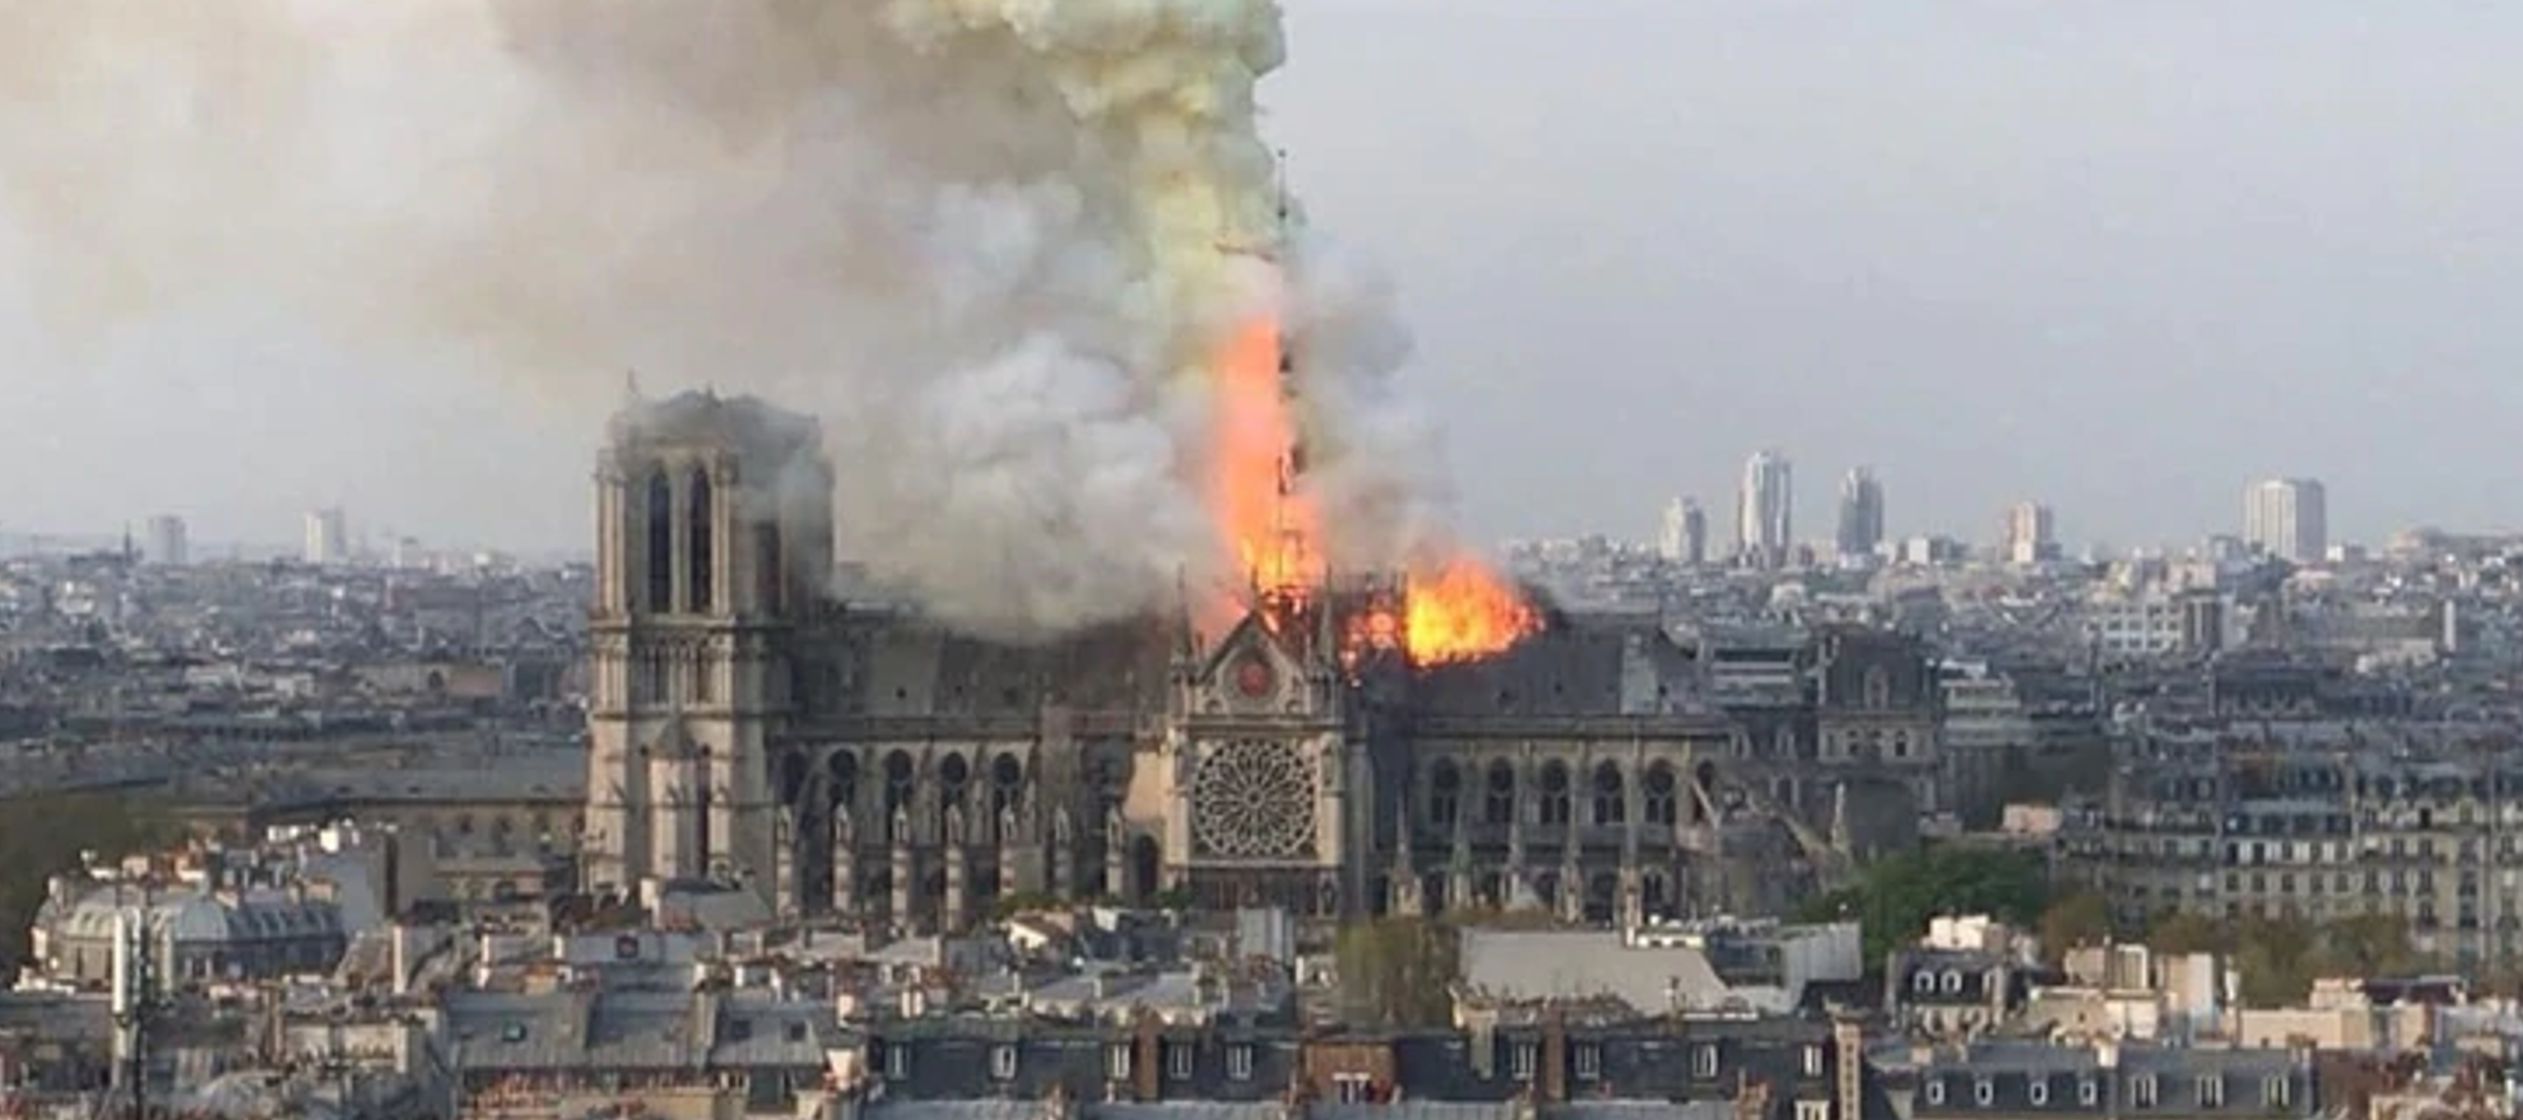 Ya va siendo tiempo de ir reflexionando algo sobre lo que ha sucedido con Notre Dame.